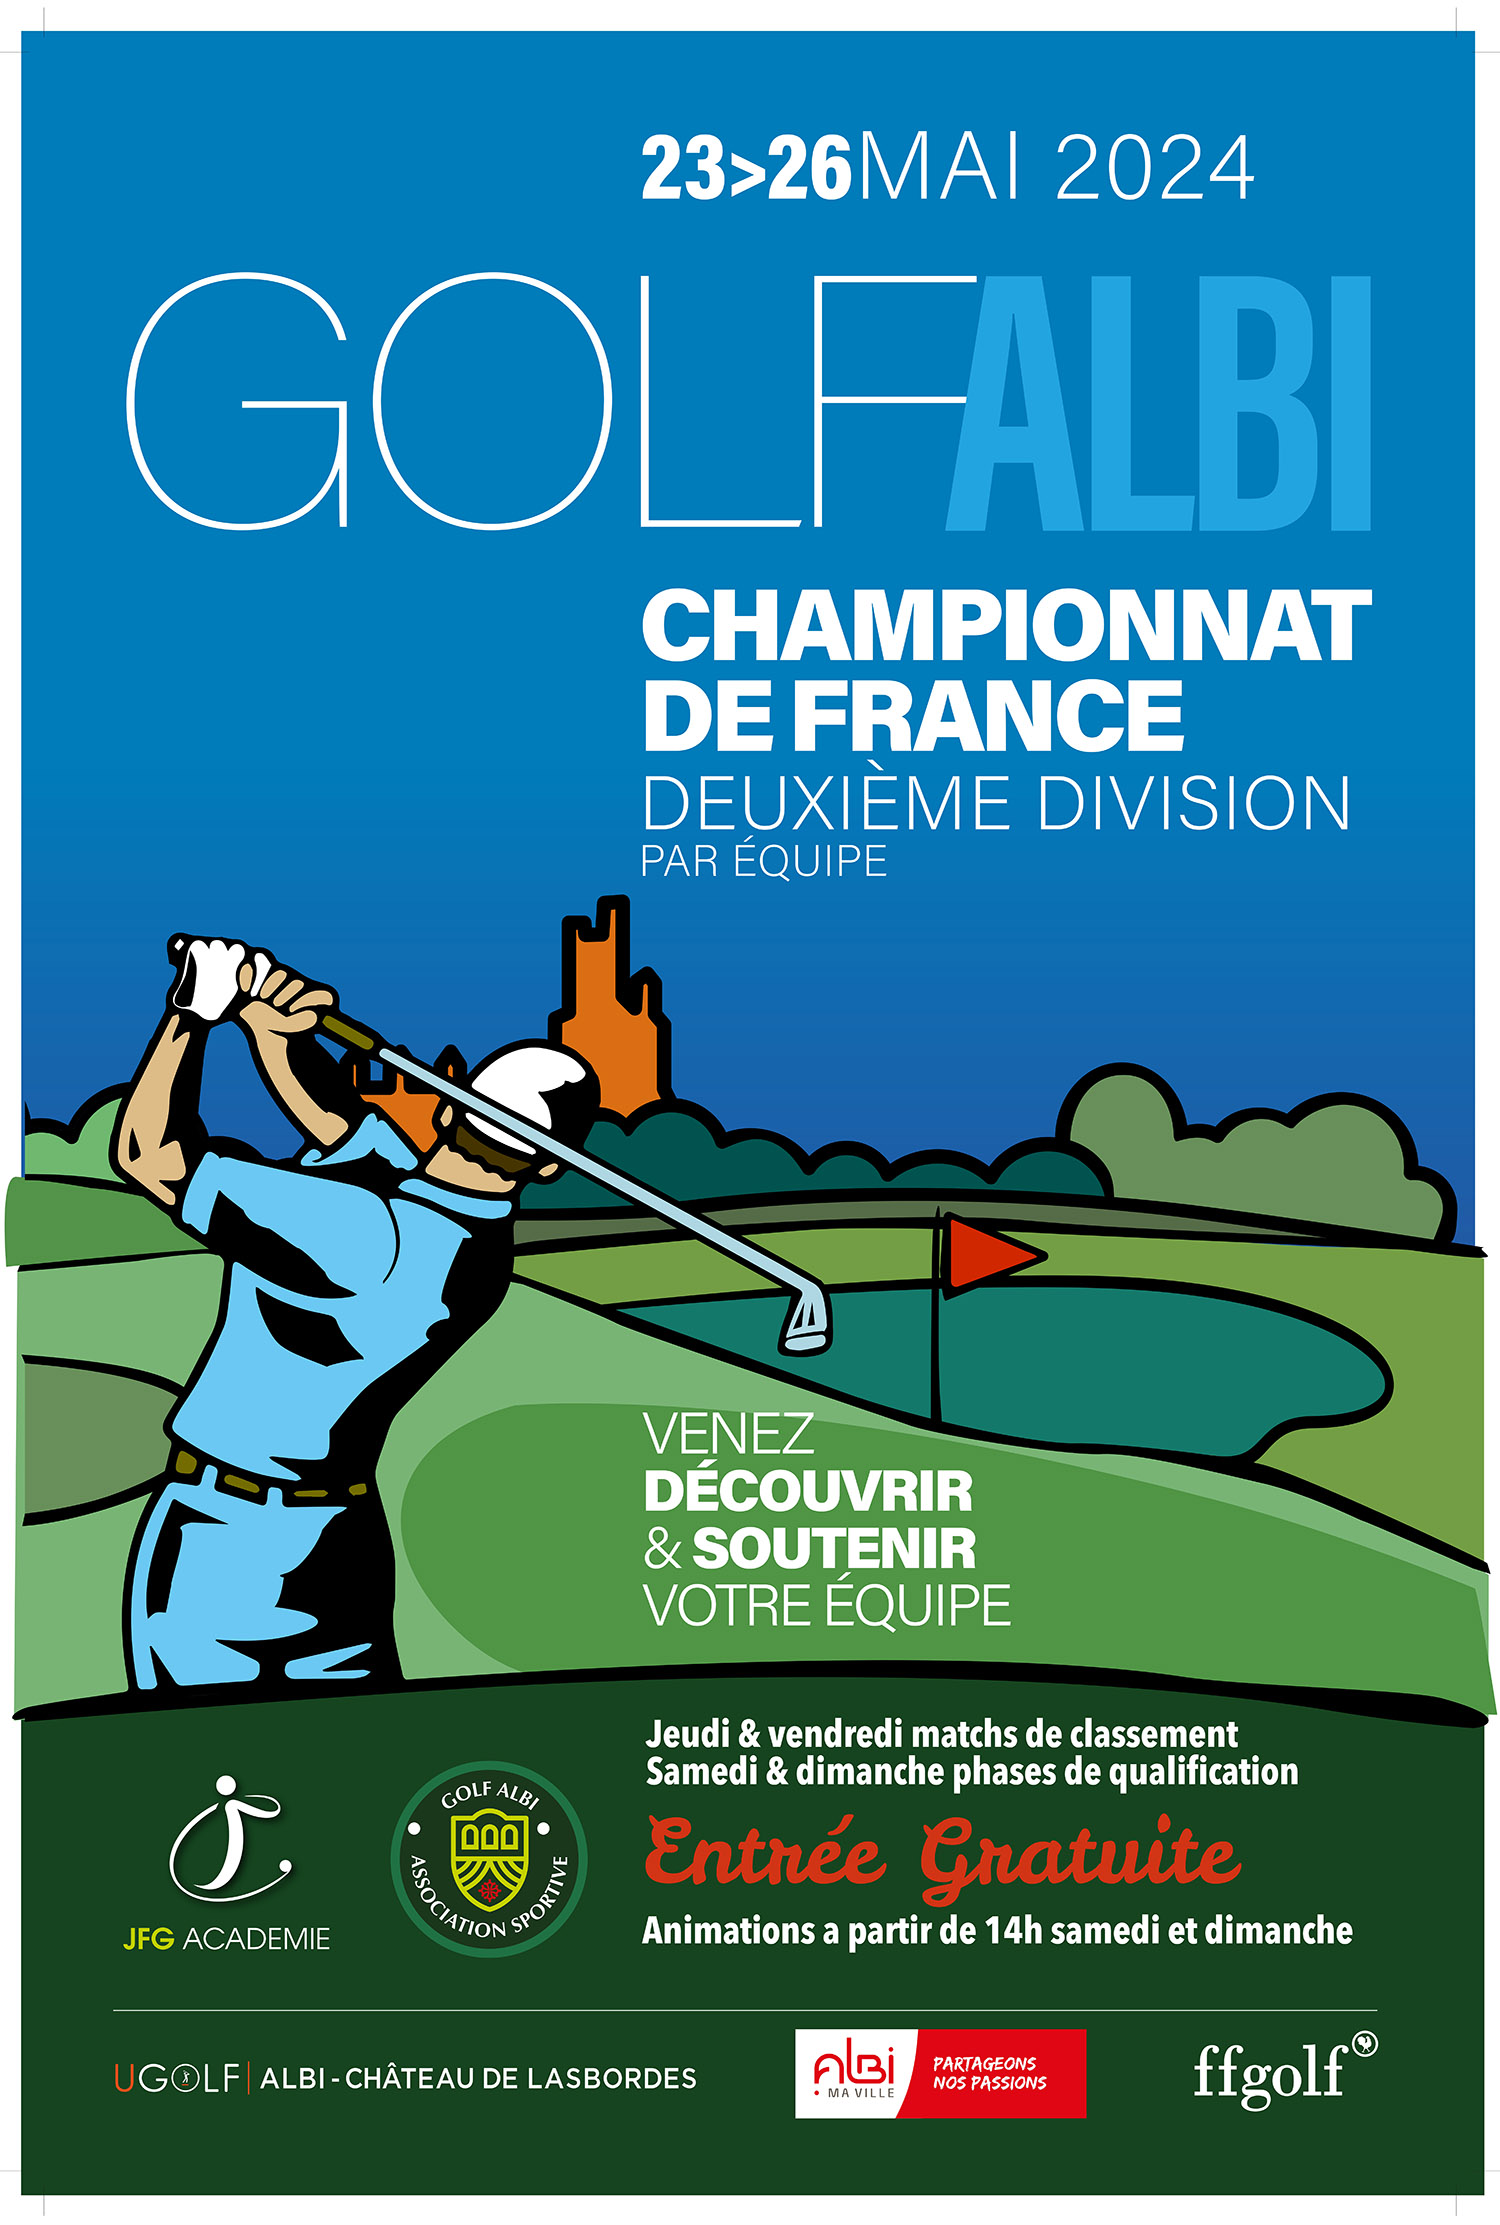 Championnat de France golf deuxième division